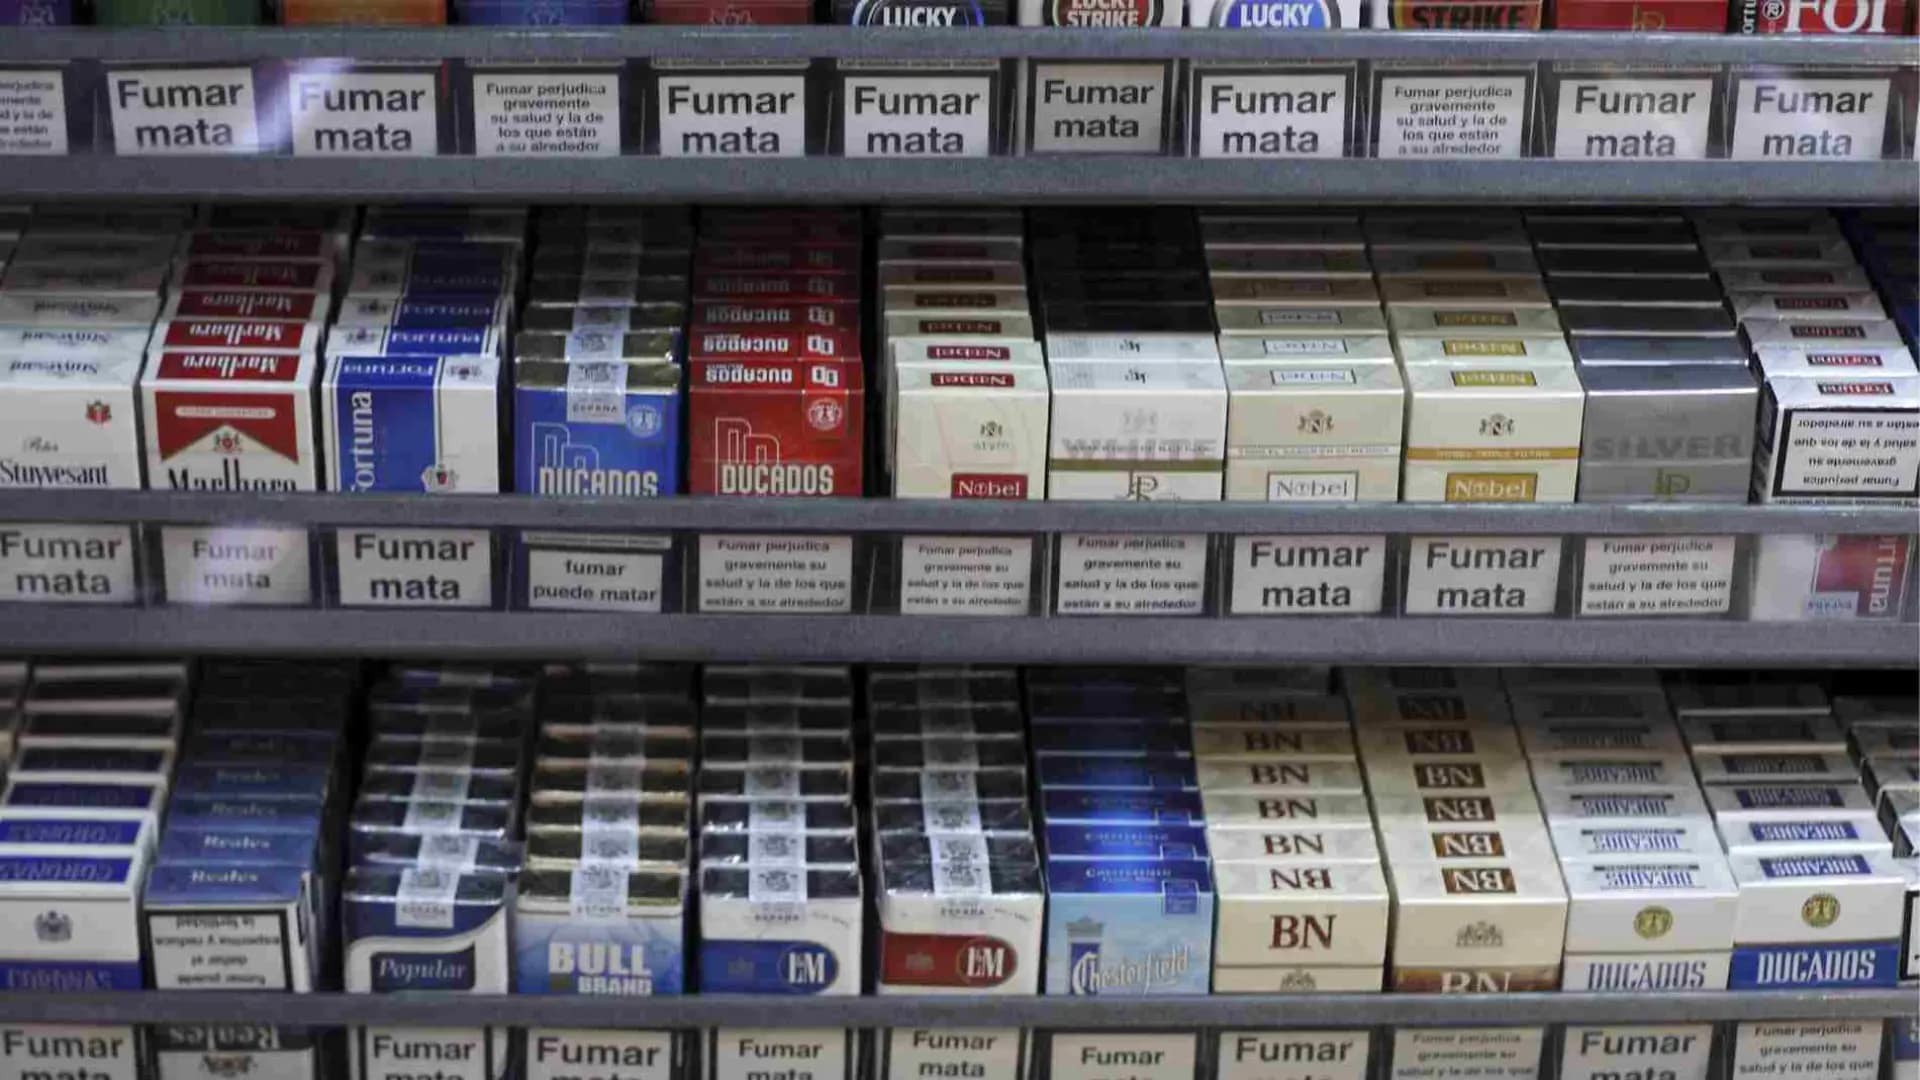 el precio del tabaco cambia y estas son las marcas de cigarrillos afectadas